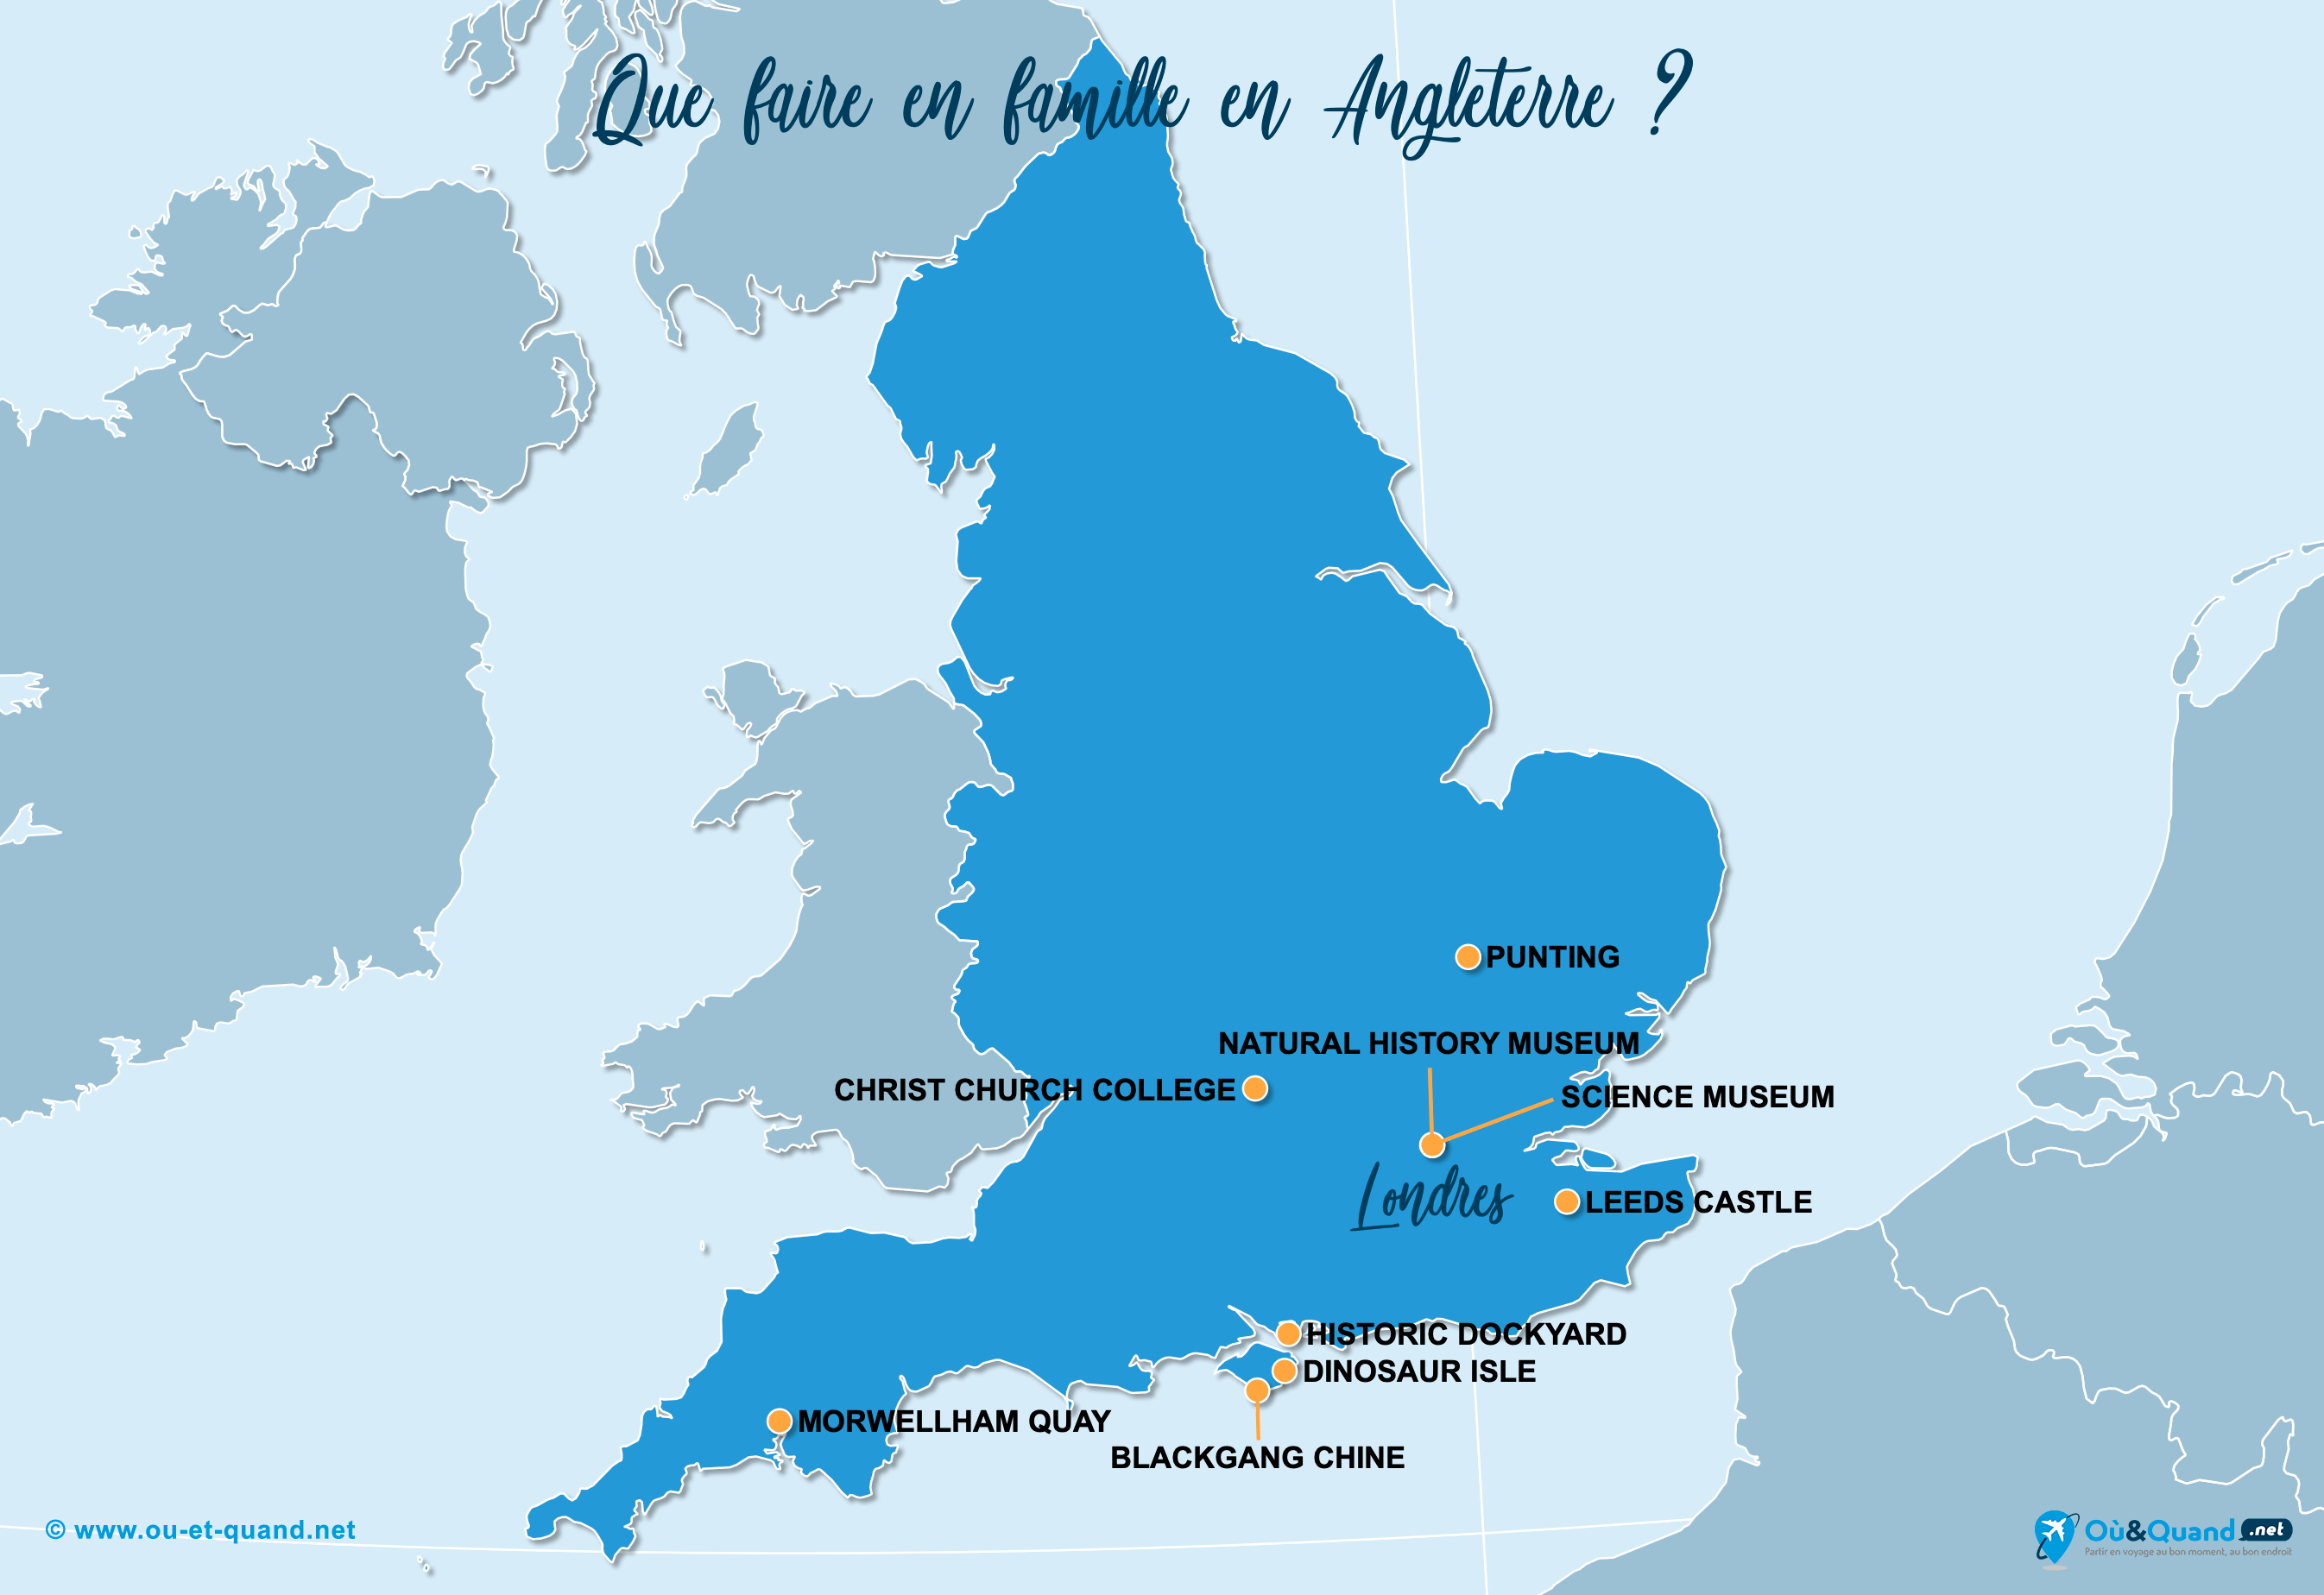 La carte des endroits en Angleterre à visiter en famille